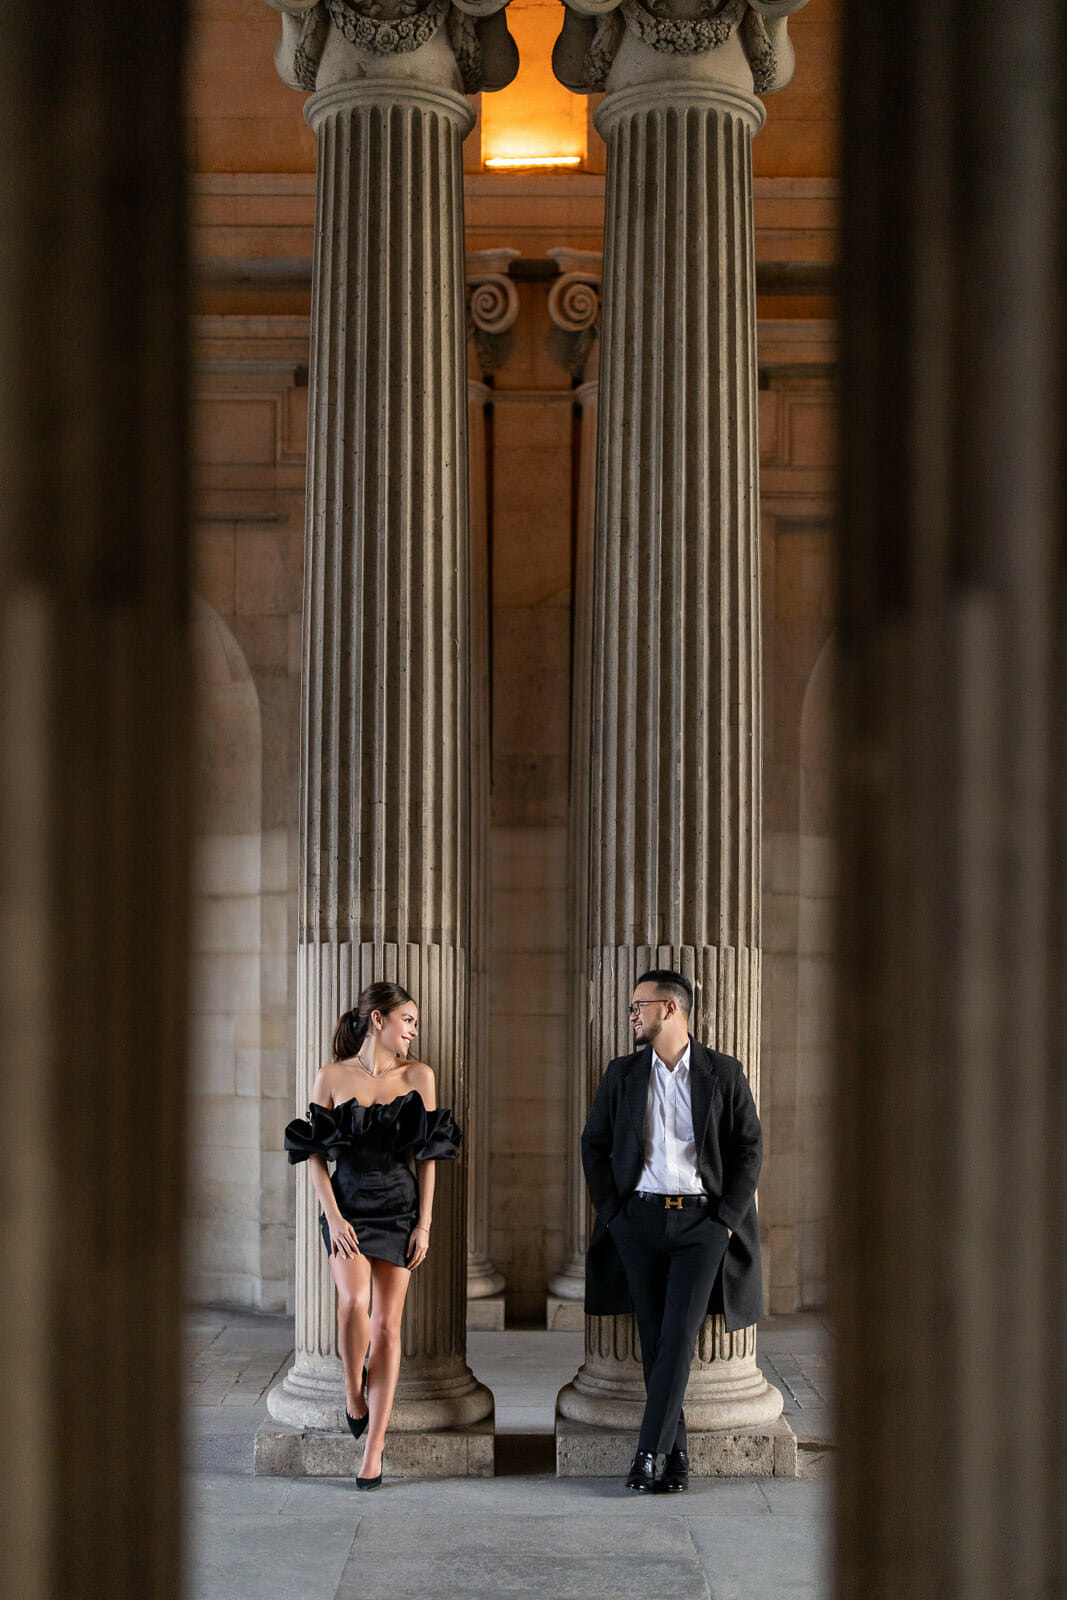 Romantic Paris couple photoshoot at the Louvre Museum Blue Hour